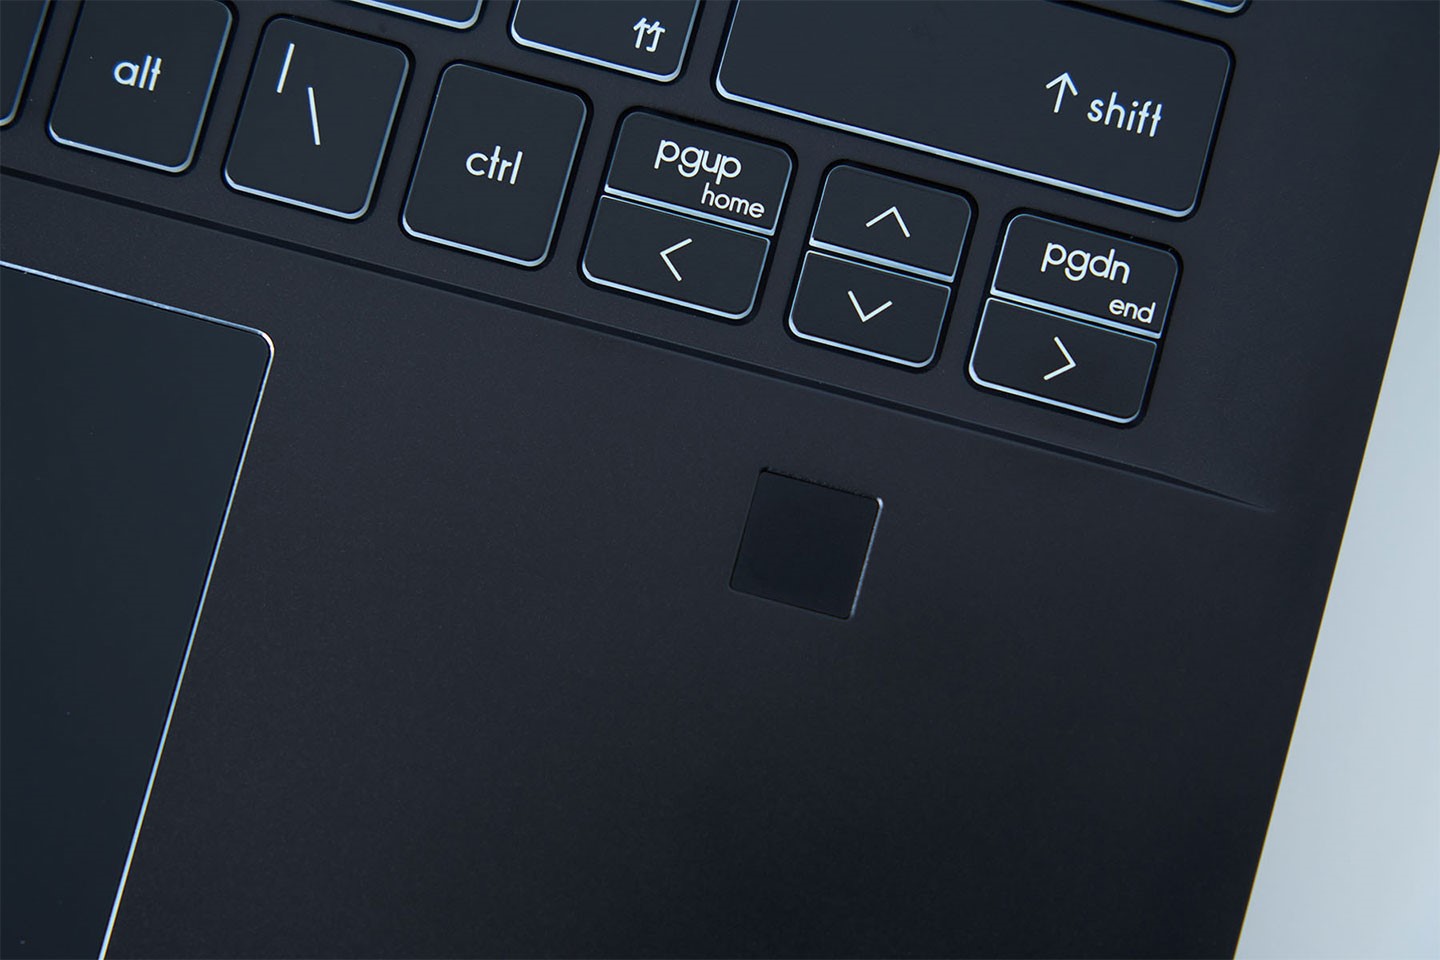 鍵盤右下角也標配指紋辨器，可配 Windows Hello 大幅提升系統便利性與安全性。